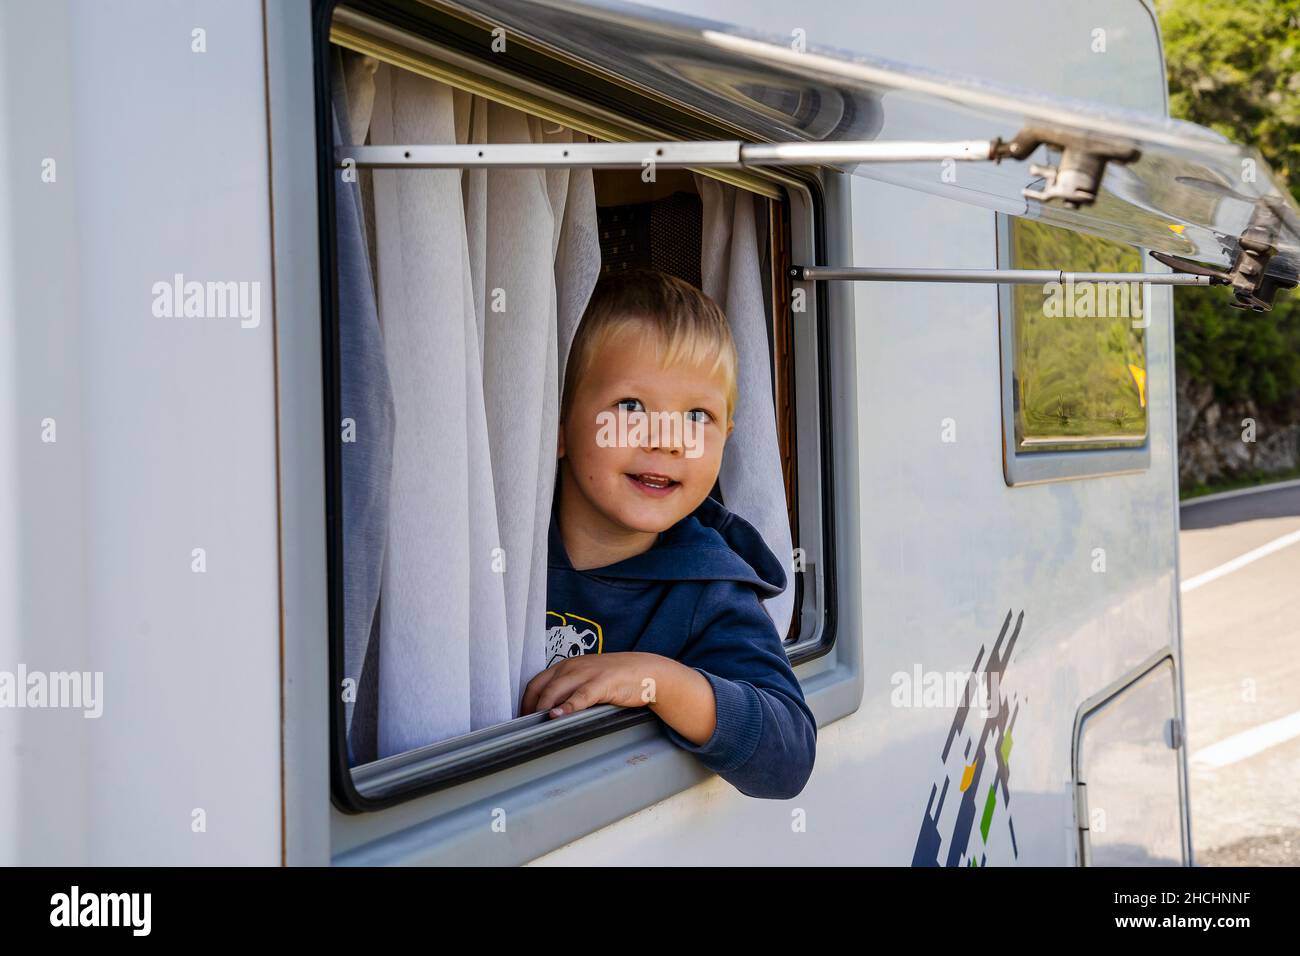 Glücklicher kleiner Junge, der durch das Fenster des Wohnmobils schaute, der entlang der Straße, Portugal, geparkt war Stockfoto